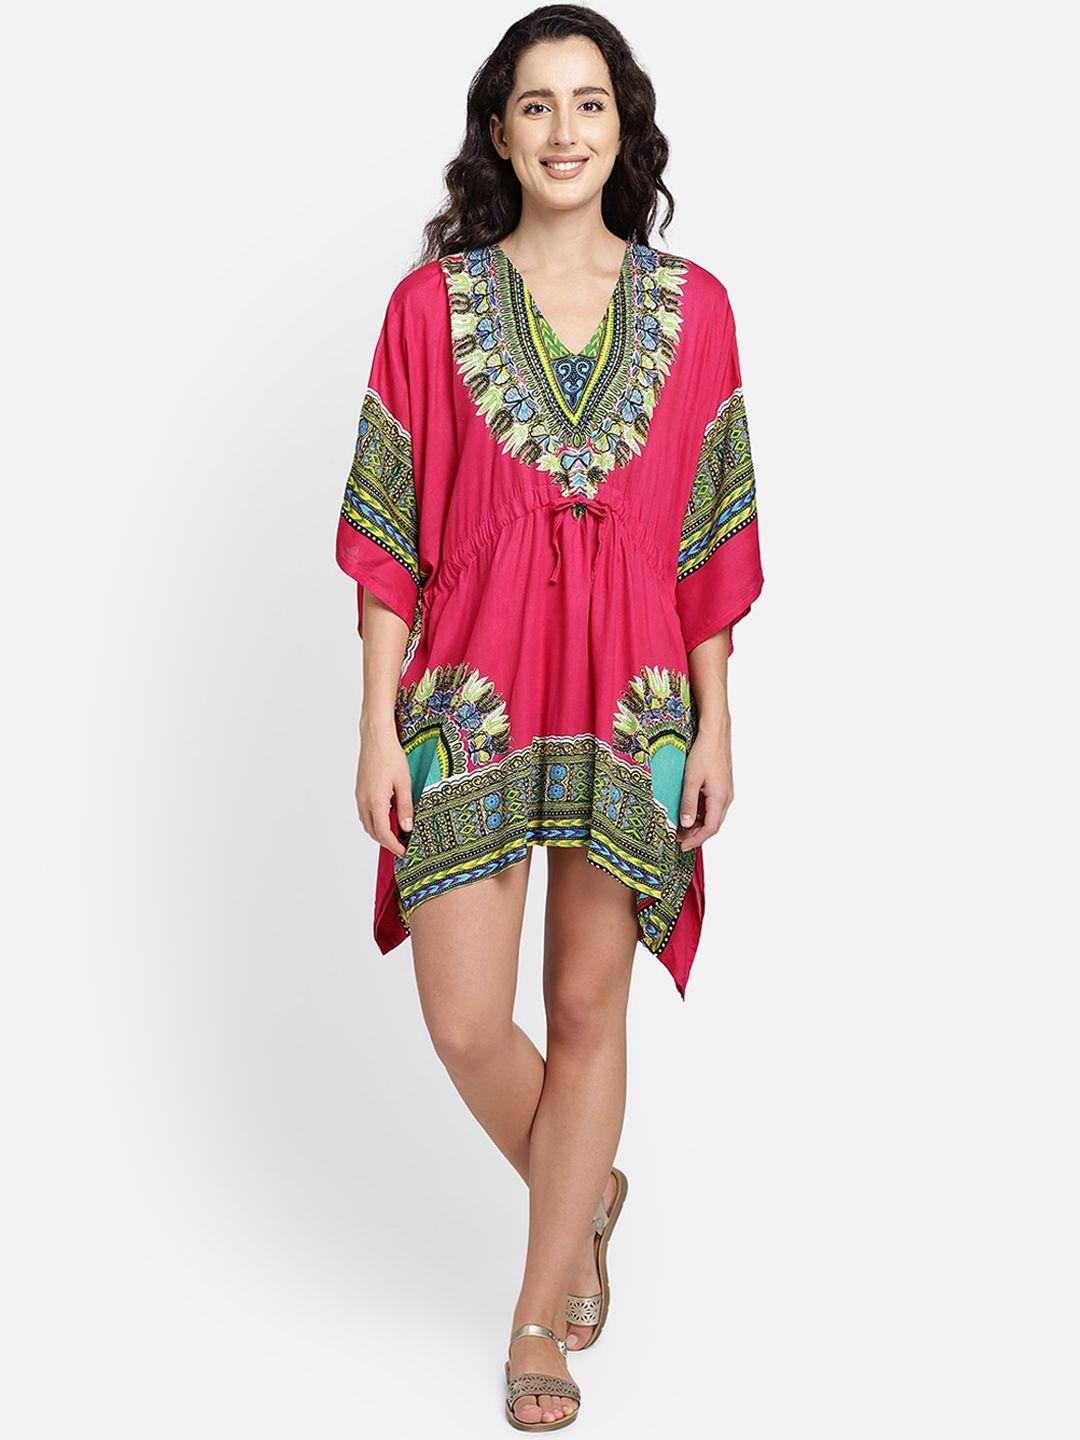 aditi-wasan-pink-&-green-ethnic-motifs-kaftan-dress